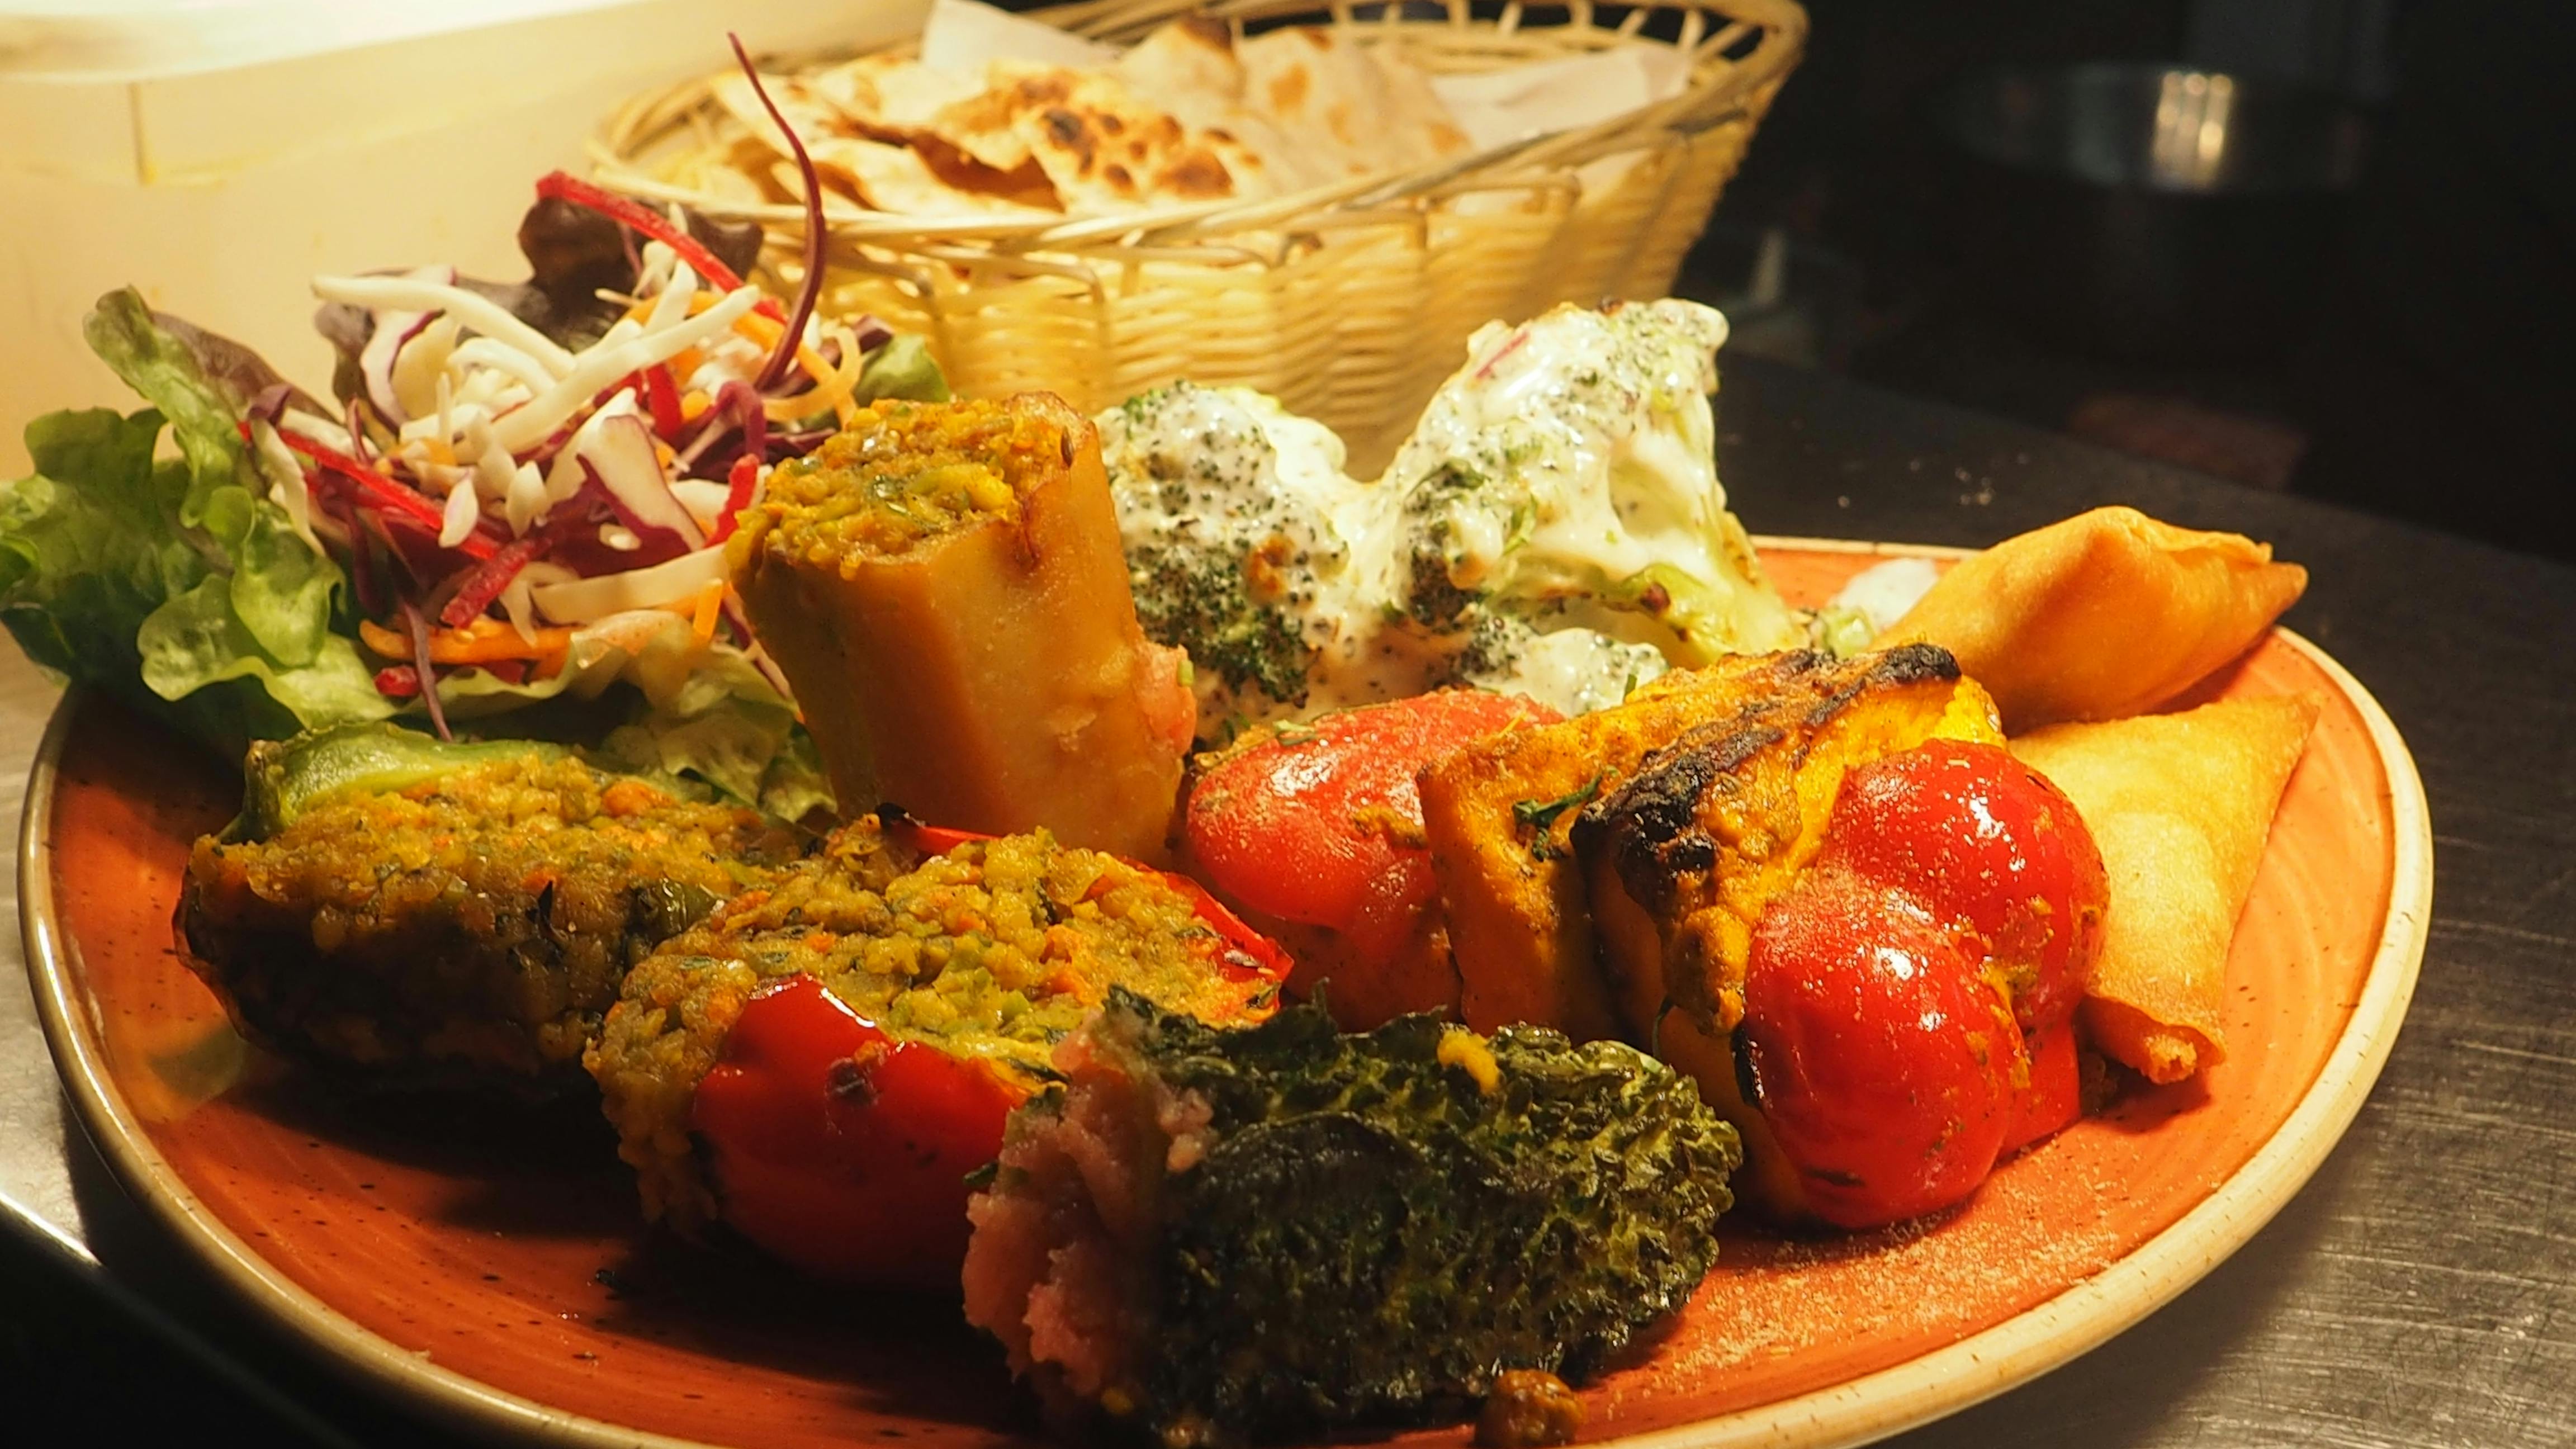 Kostenloses Foto zum Thema: indische küche, indische portion, köstlich